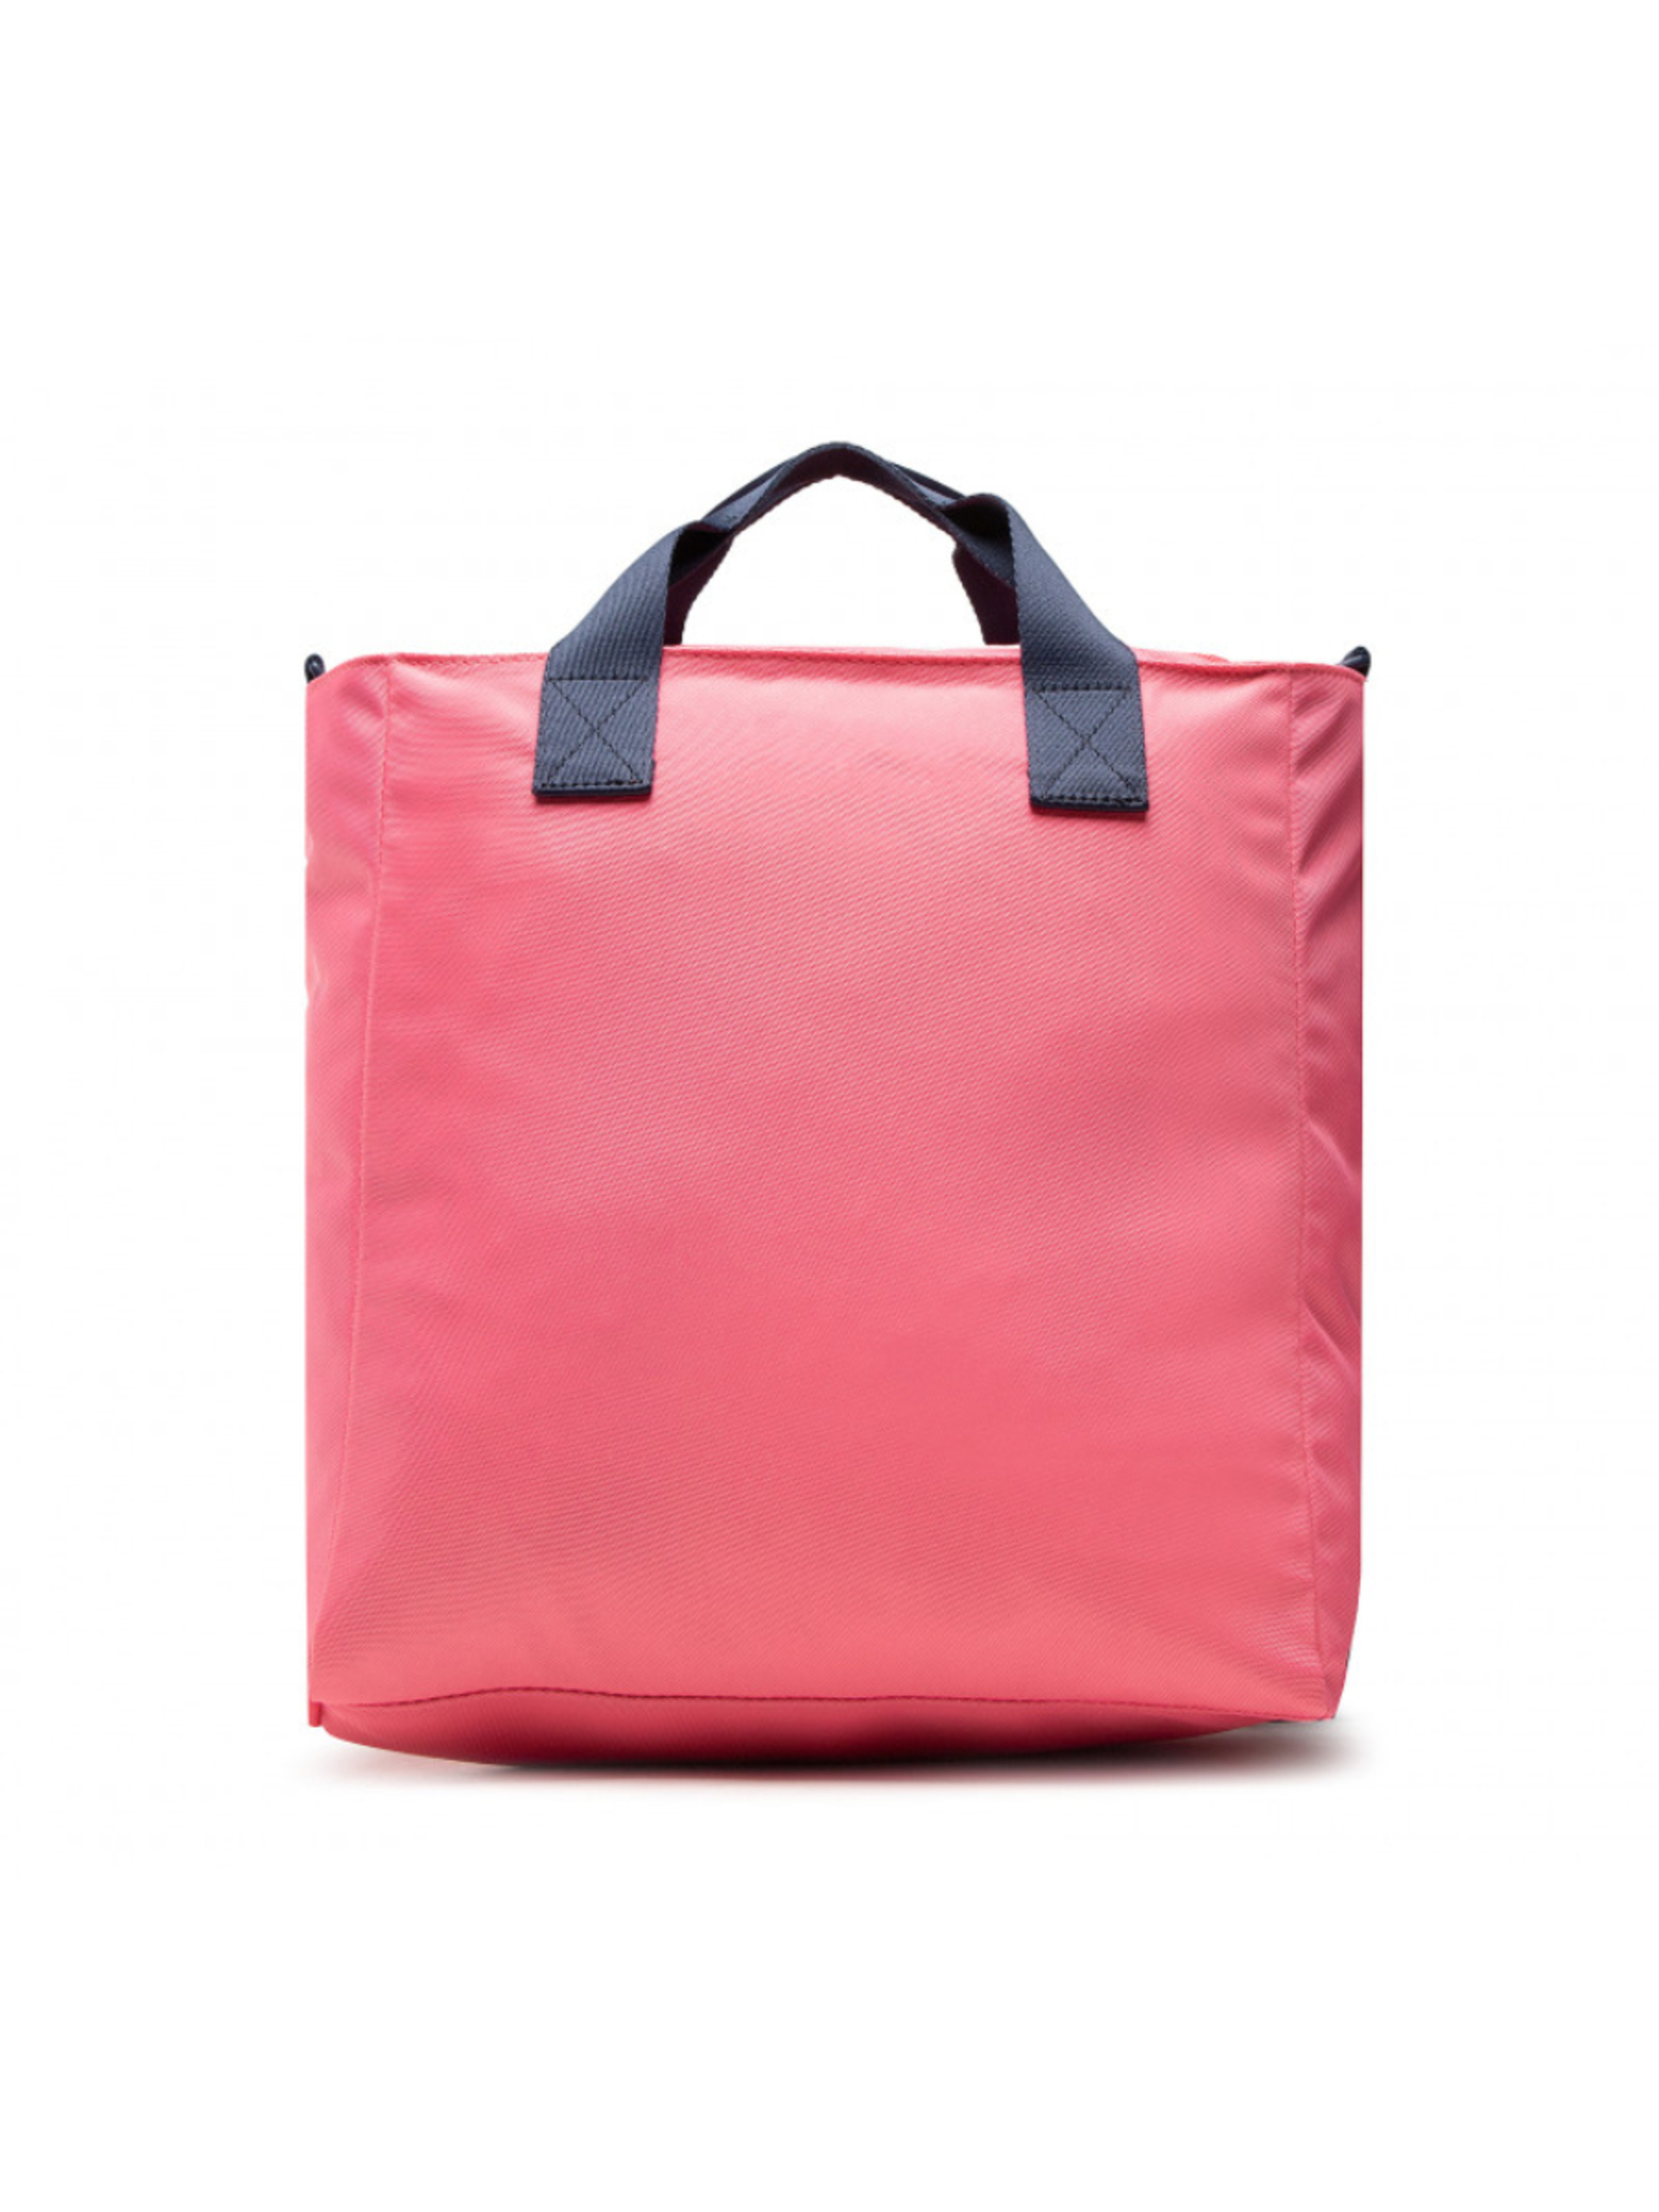 Tommy Jeans dámská růžová kabelka - OS (TIJ)